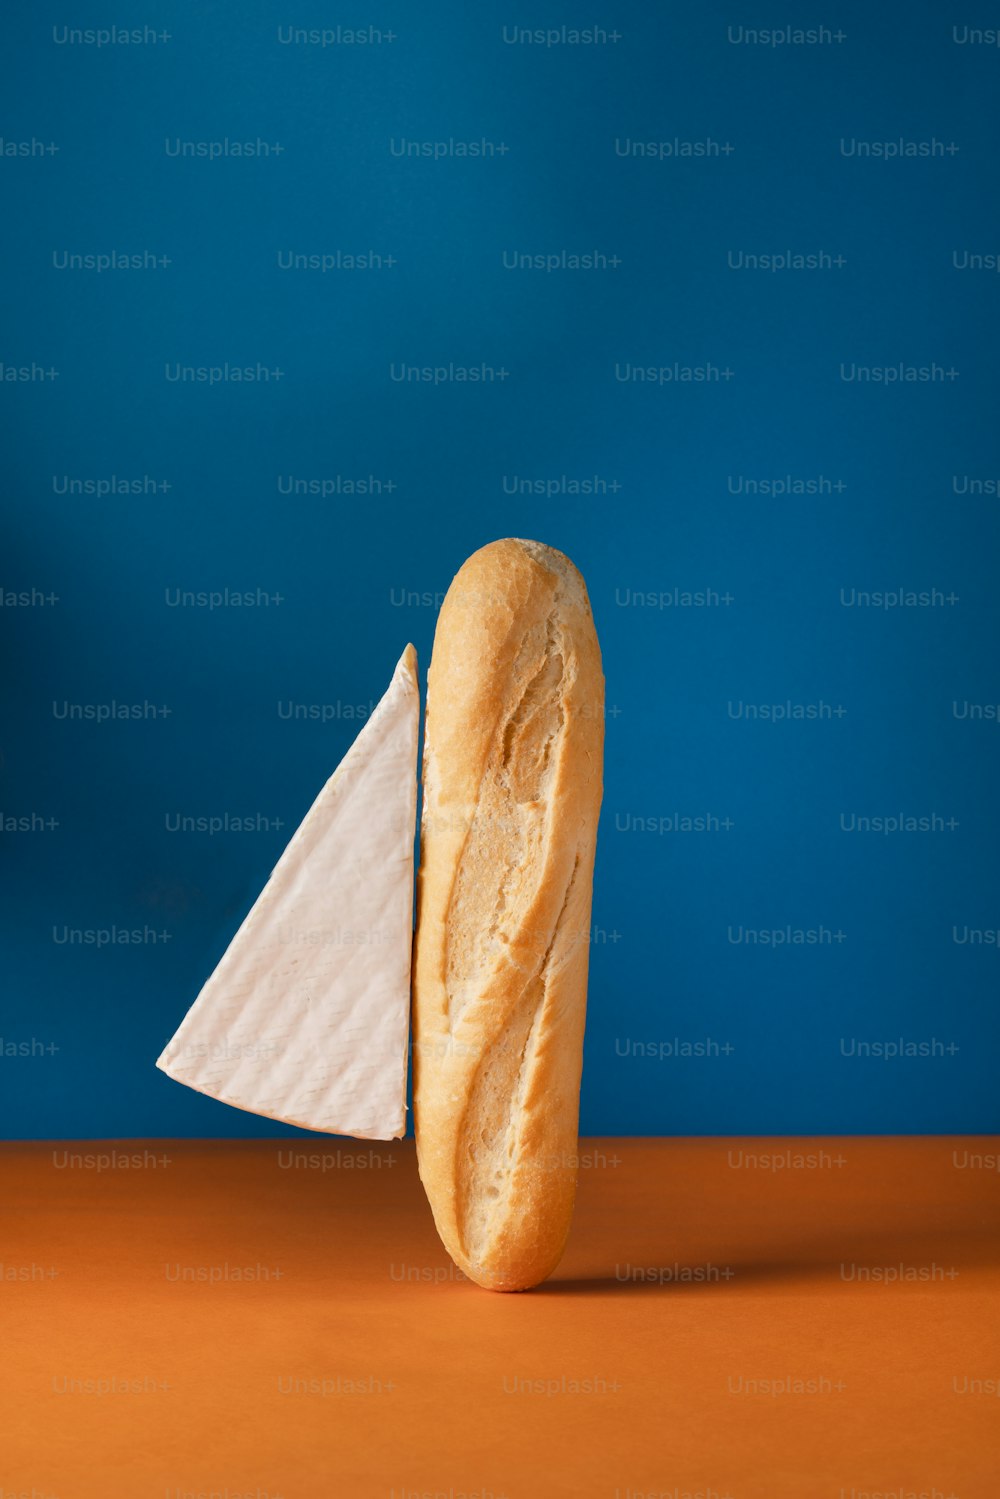 테이블 위에 놓인 빵 한 덩어리